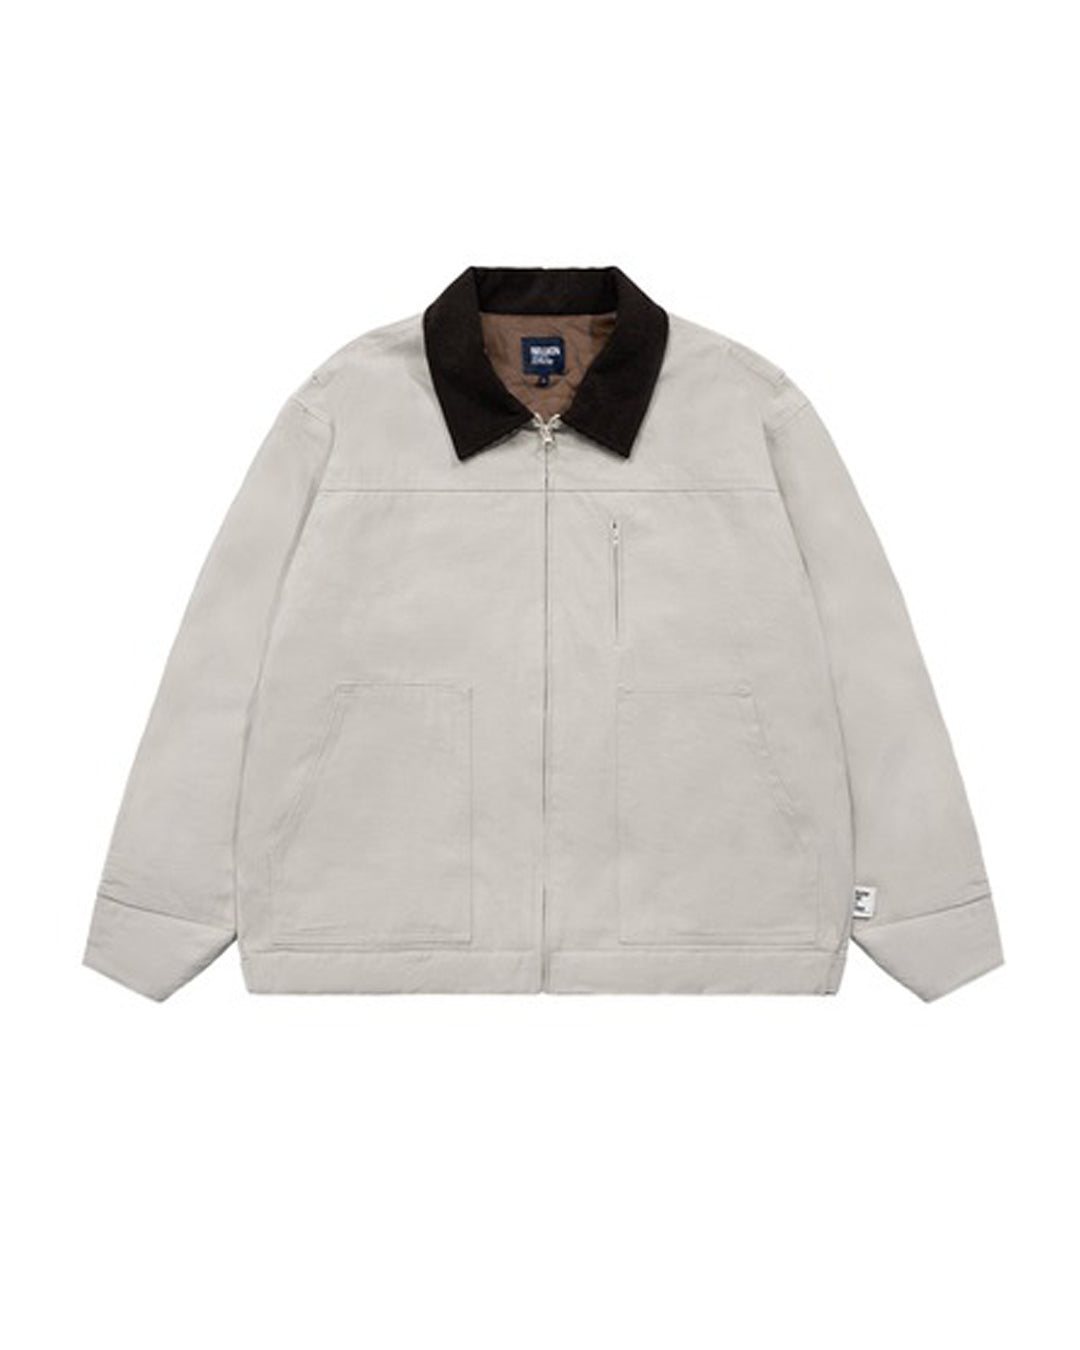 Cotton Work Jacket　JK120